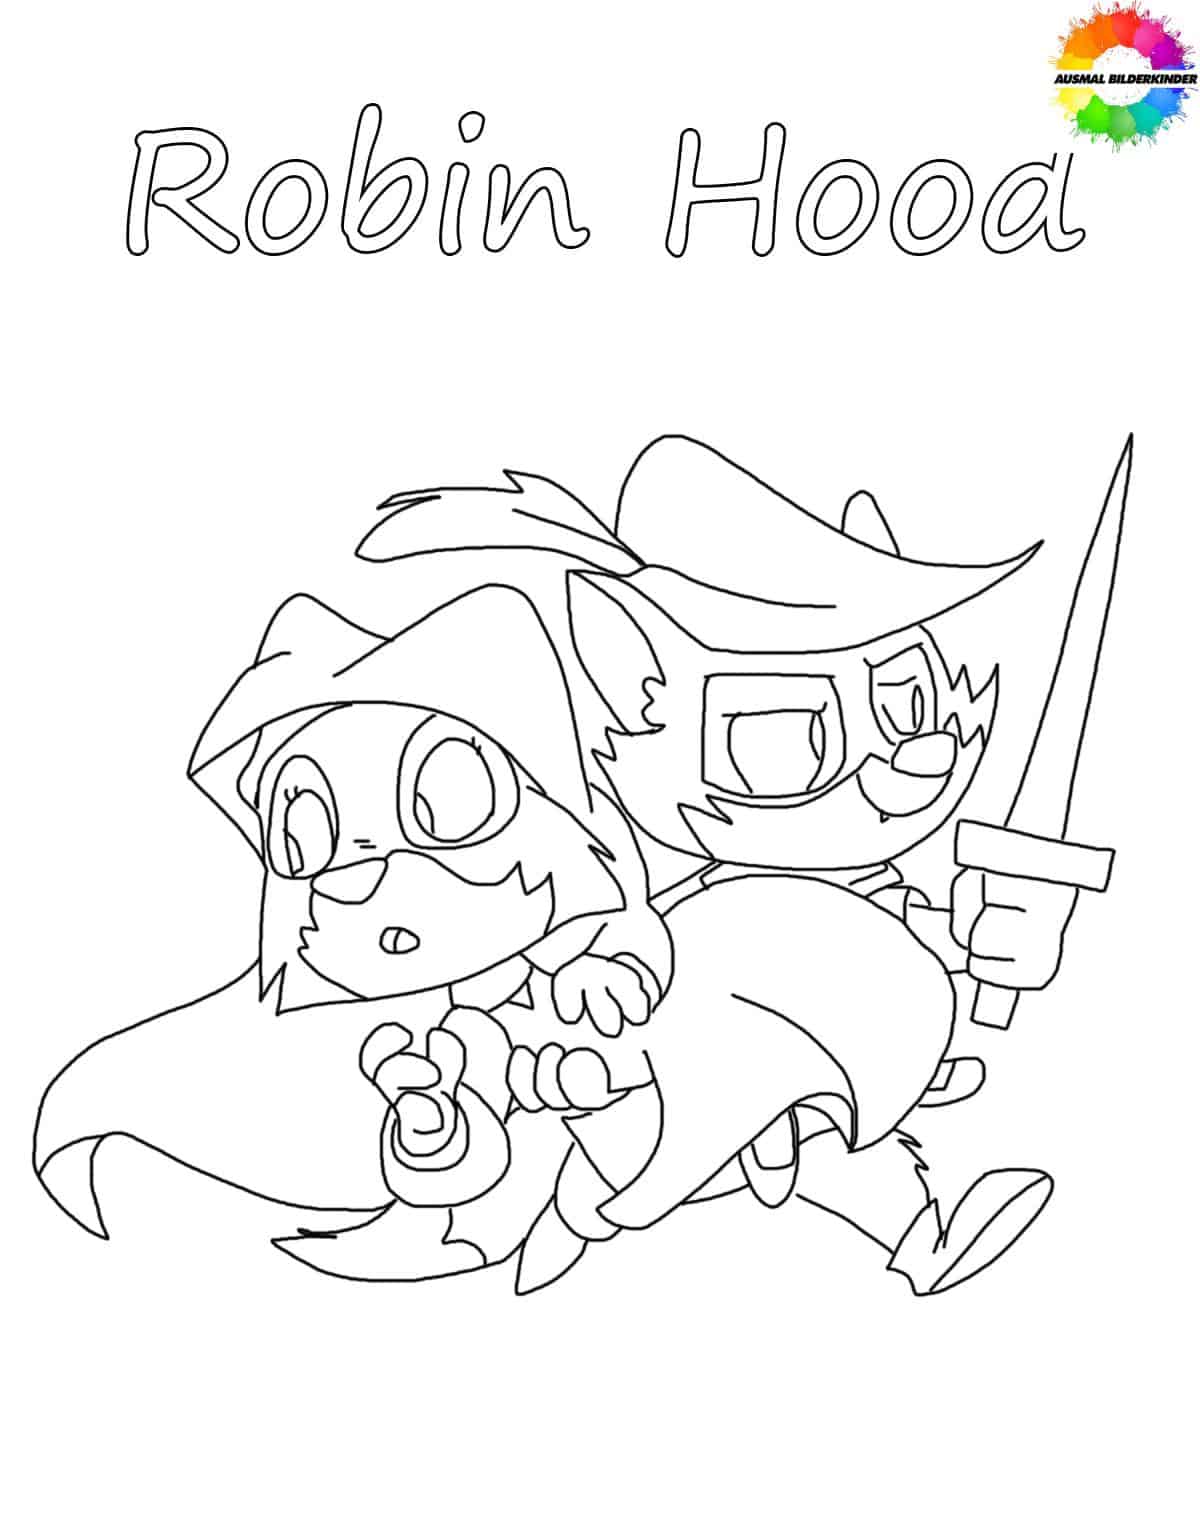 Robin Hood 19